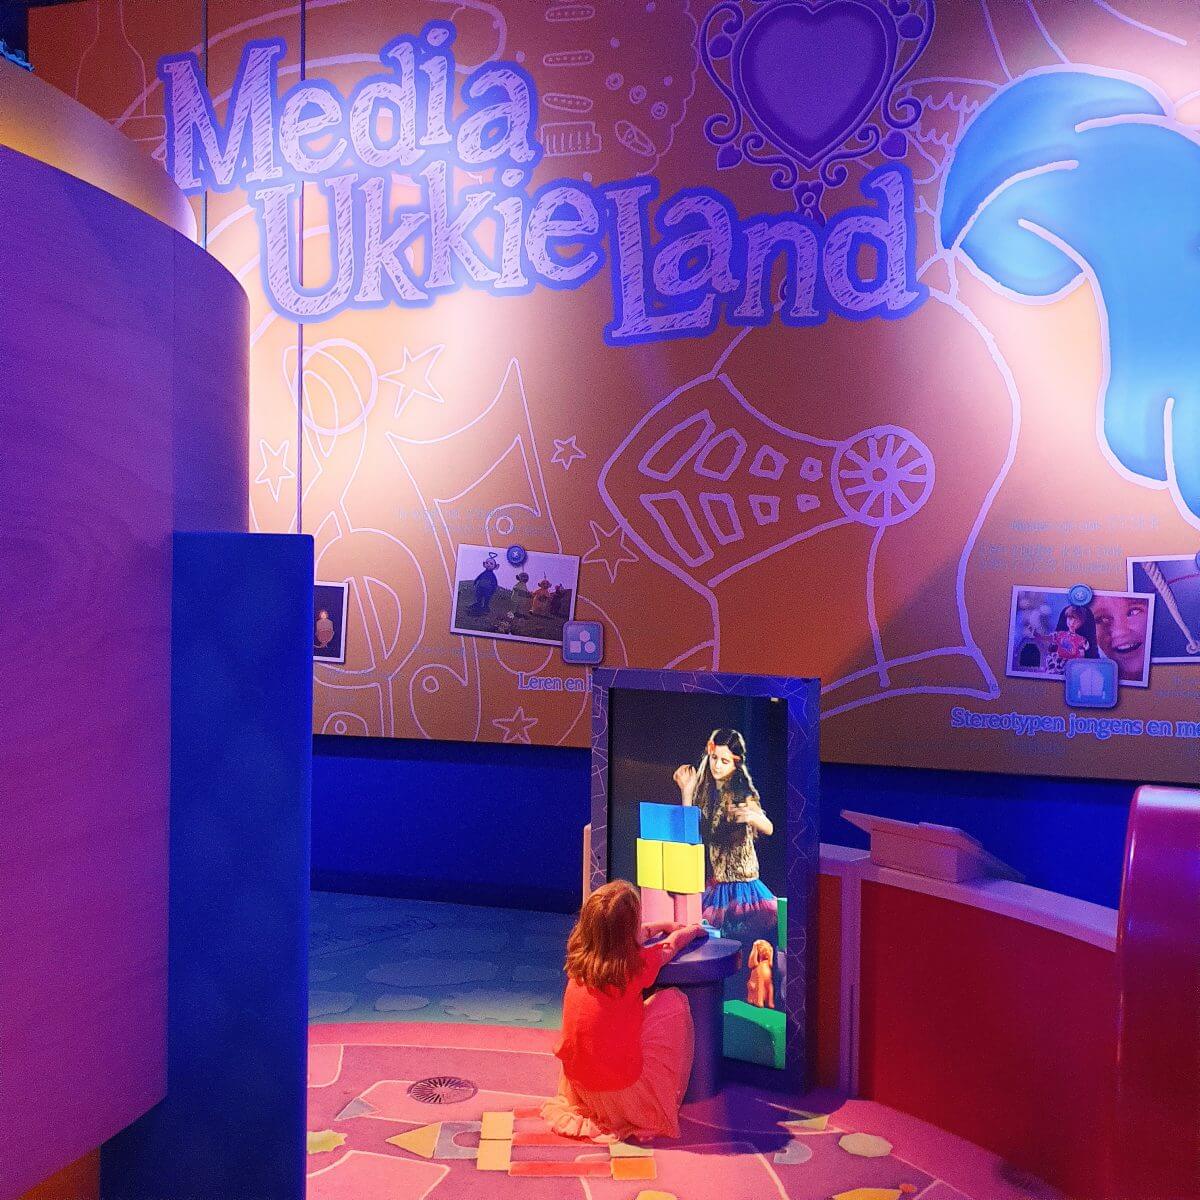 Museum met kinderen - Beeld en Geluid met Media UkkieLand